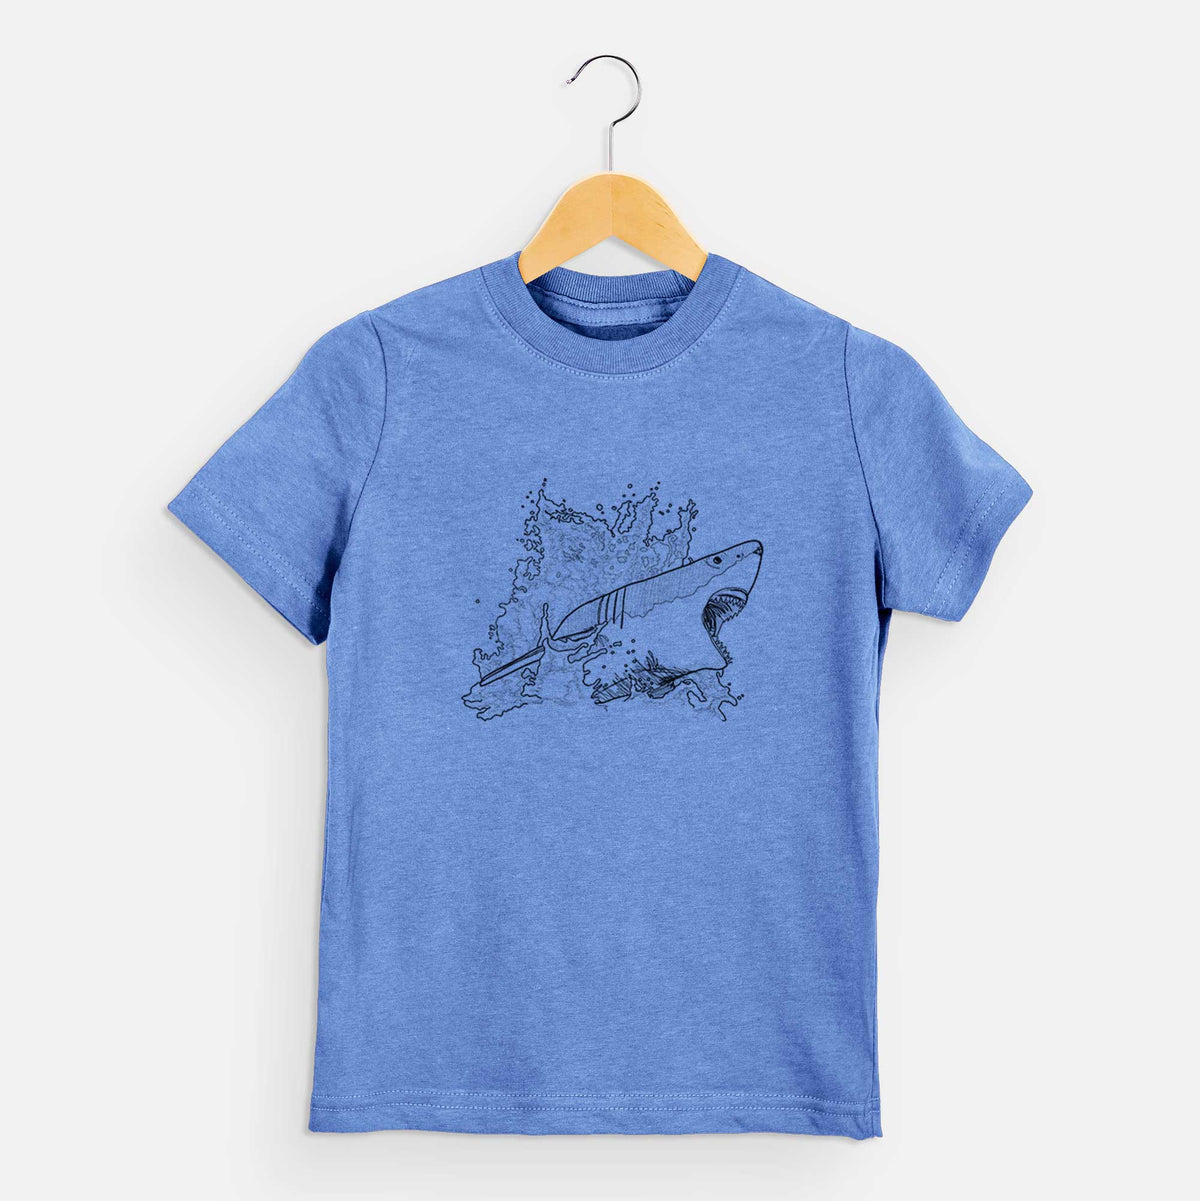 Great White Shark in Water - Kids Shirt